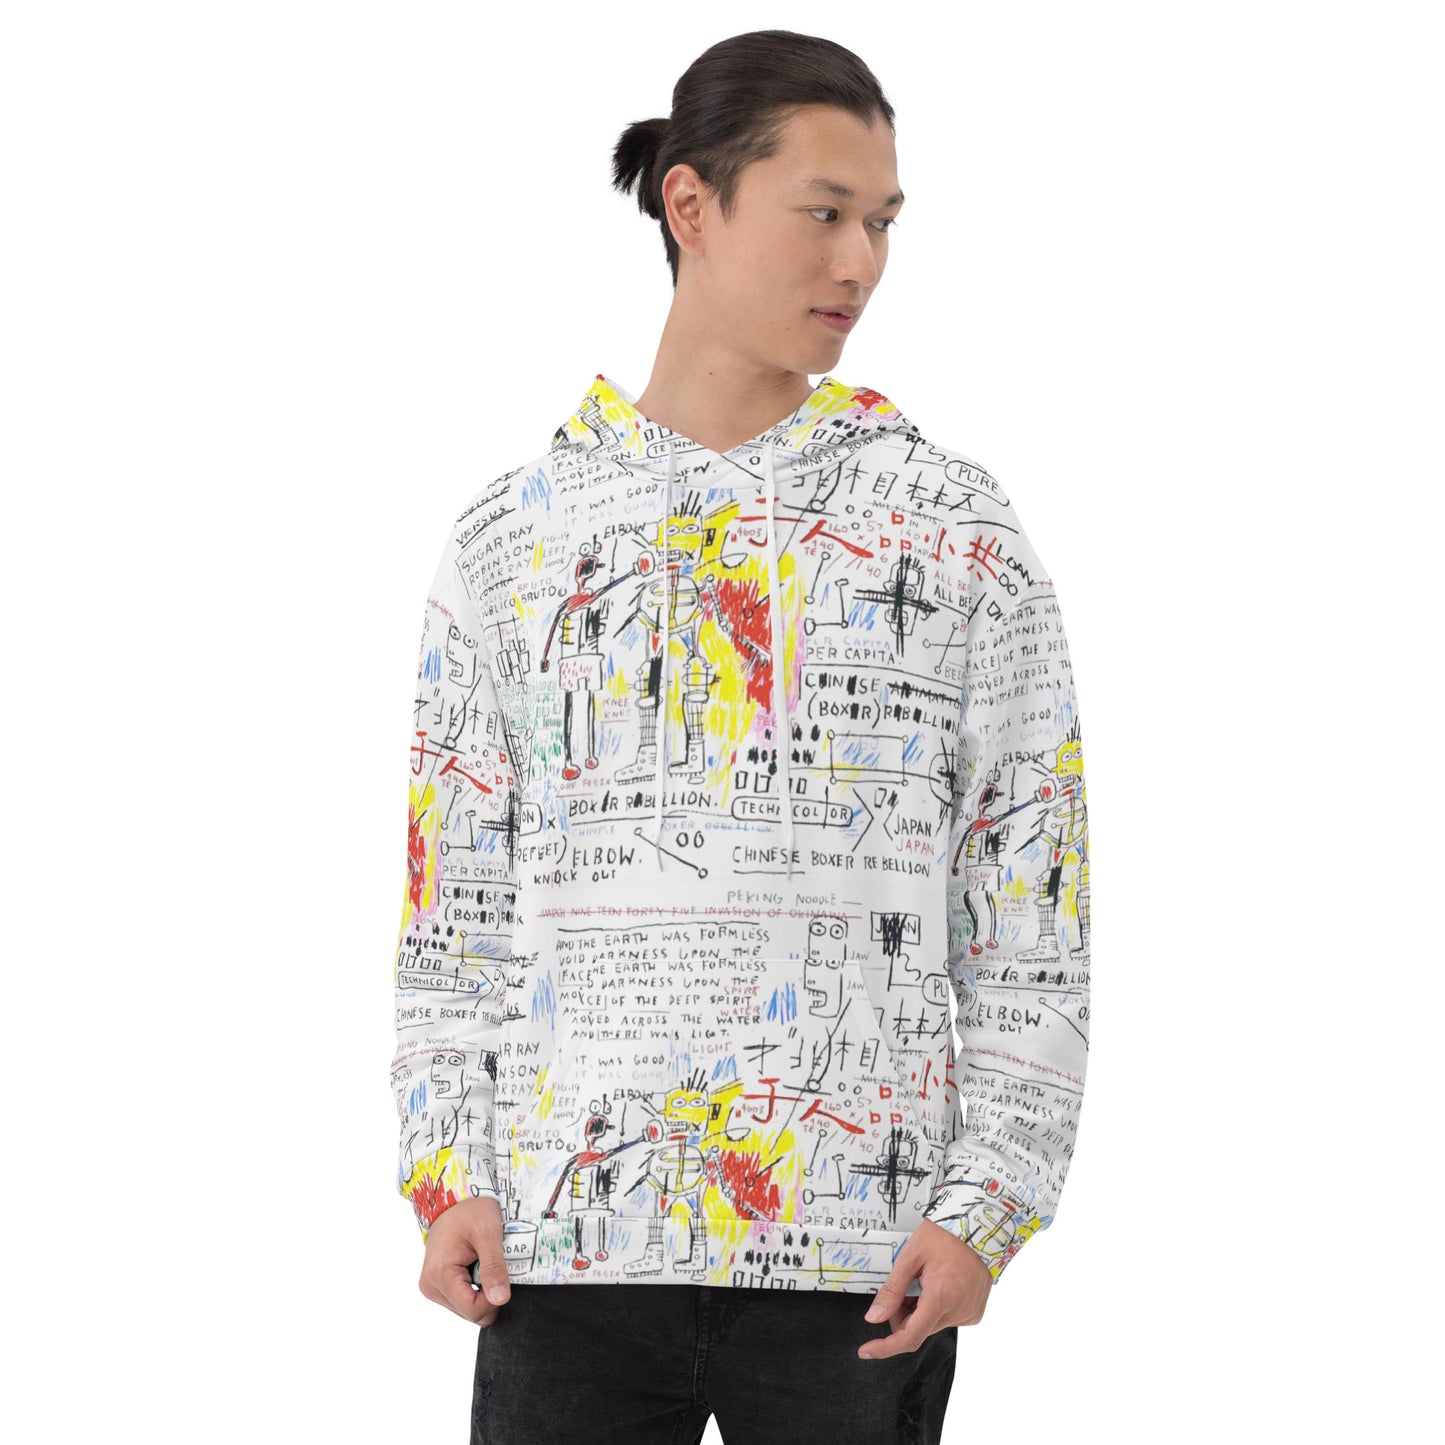 Jean-Michel Basquiat "Boxer Rebellion" Artwork Printed Premium Streetwear Sweatshirt Hoodie Harajuku Graffiti